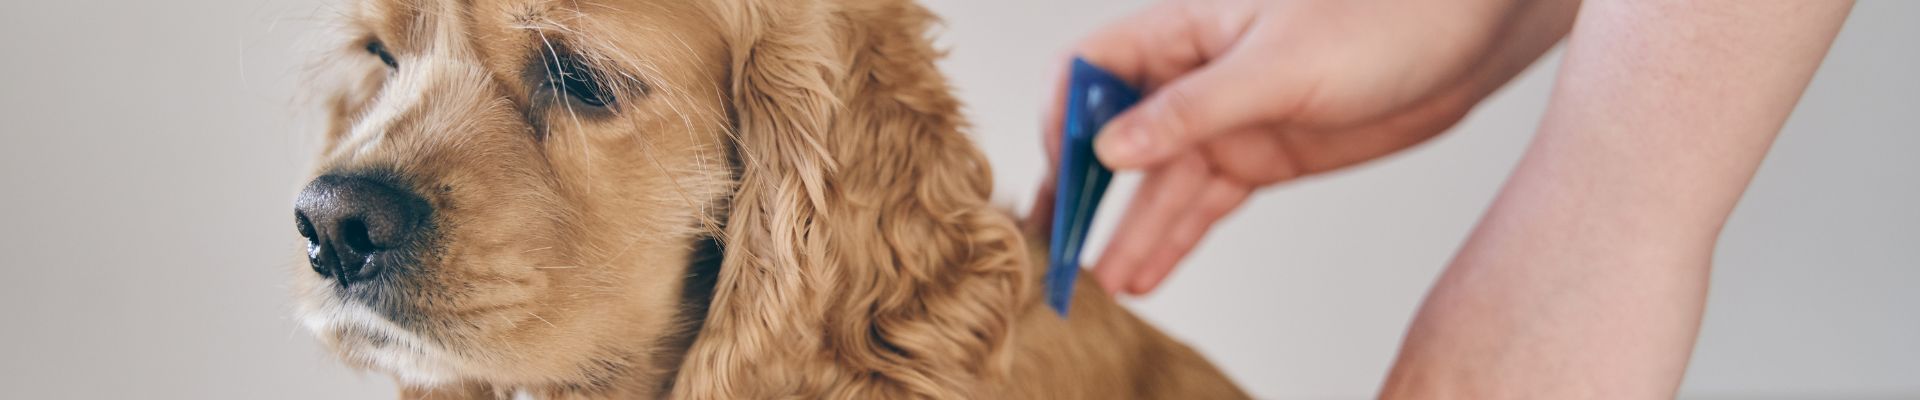 Una persona que aplica un tratamiento antipulgas en el cuello de un perro